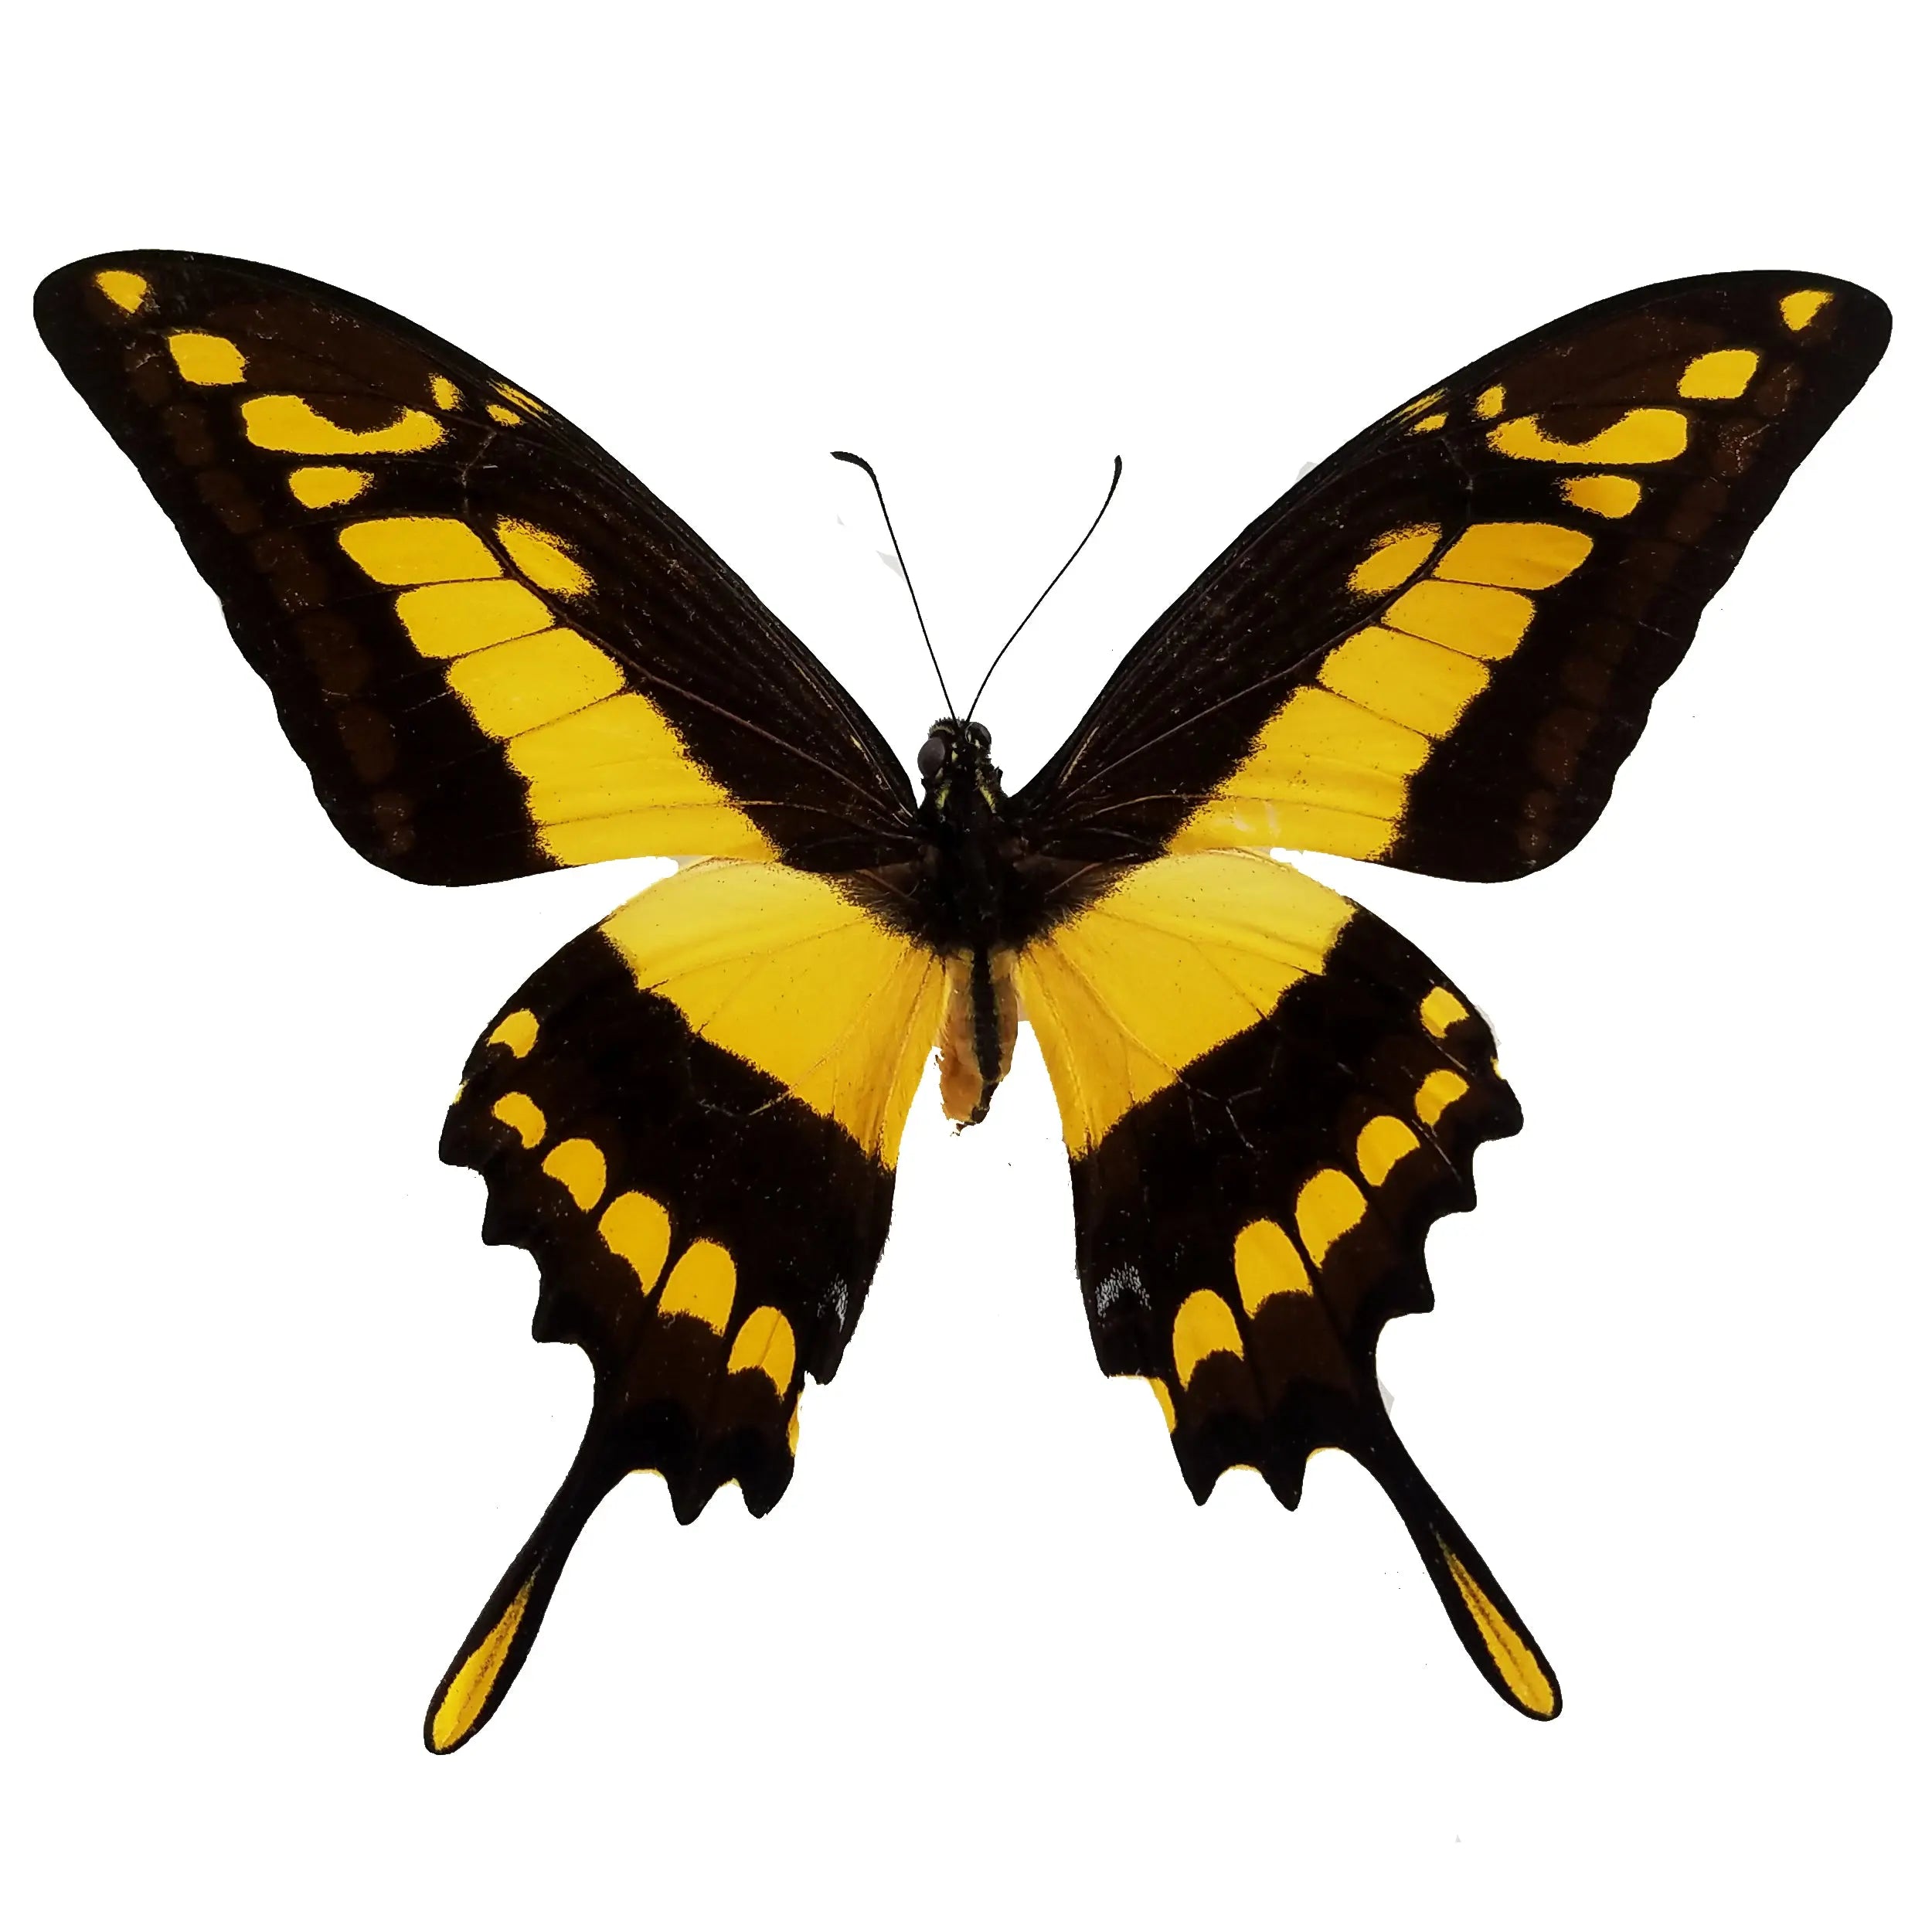 Papilio thoas, King Swallowtail - Little Caterpillar Art Little Caterpillar Art Butterfly Specimens 